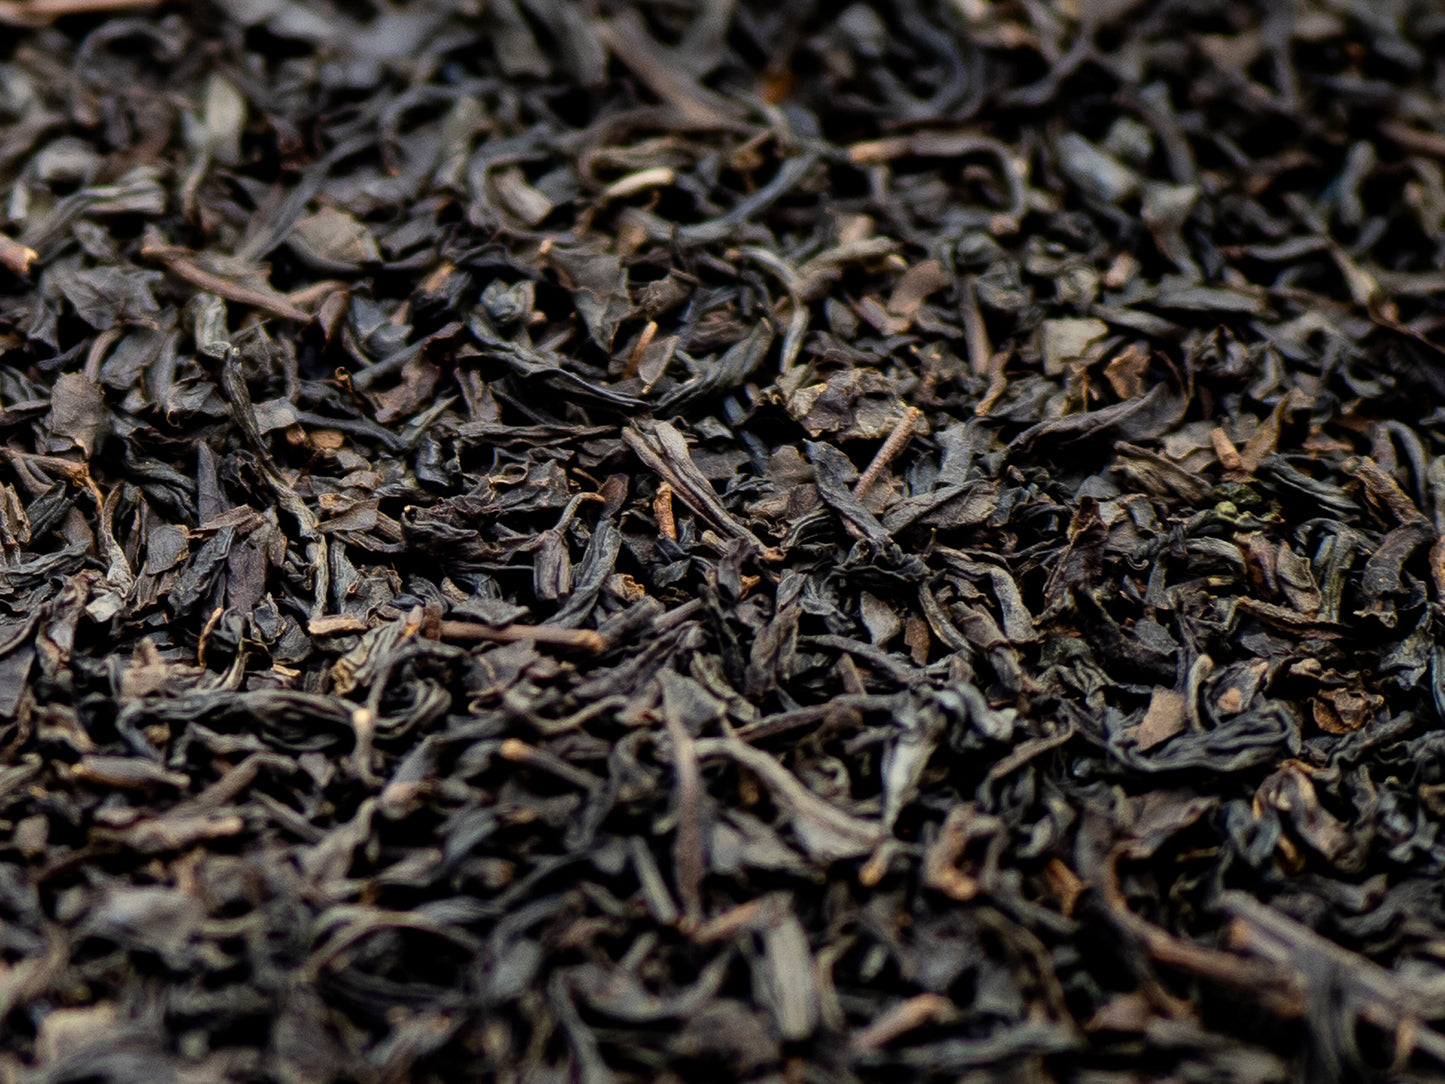 Lapsang Souchong loose tea from TEA23